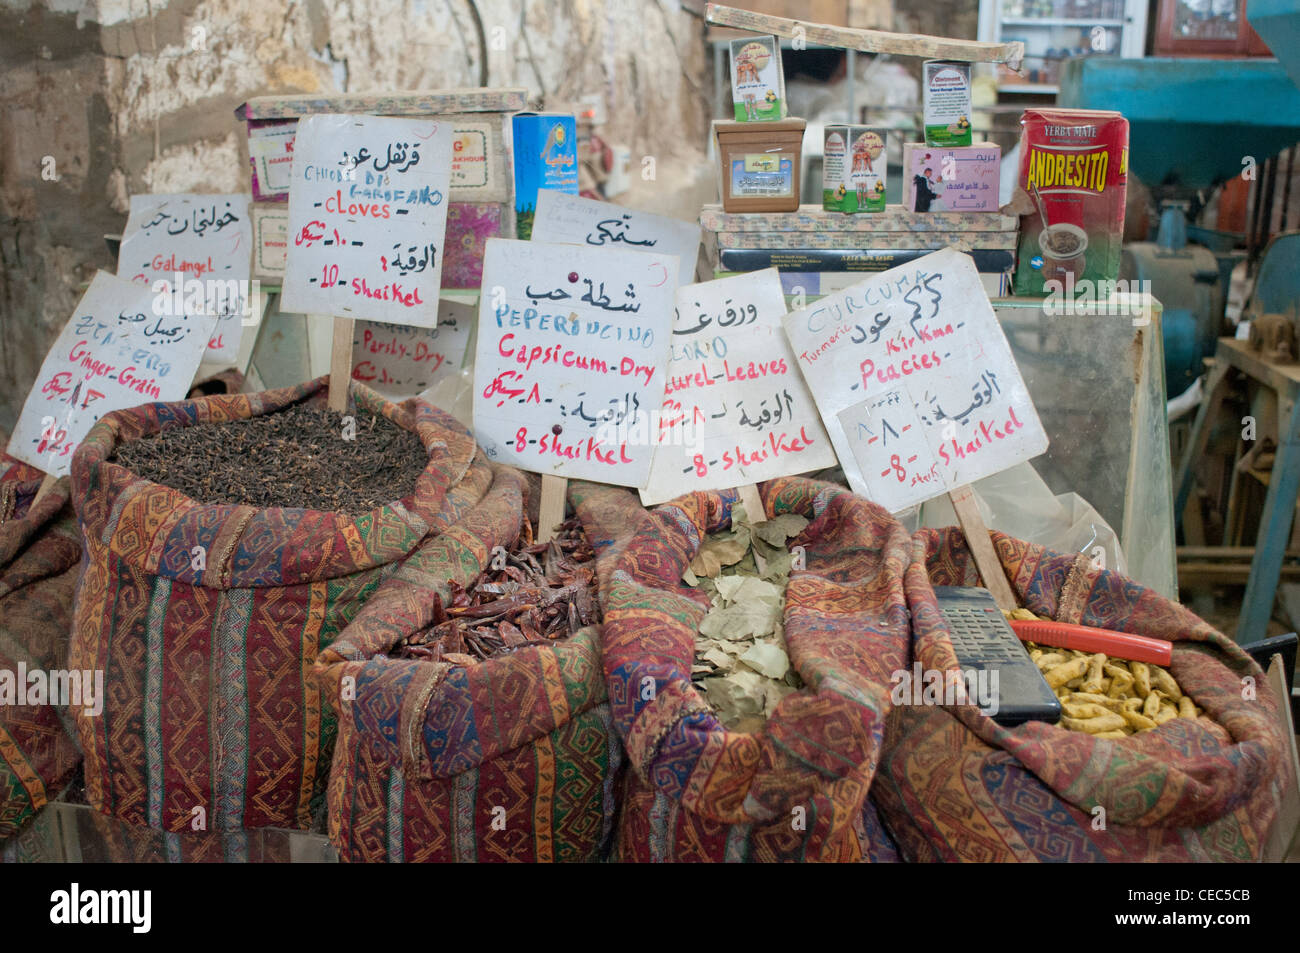 Palestina, Israel, una antigua esencia tradicional y tienda de especies. Foto de stock